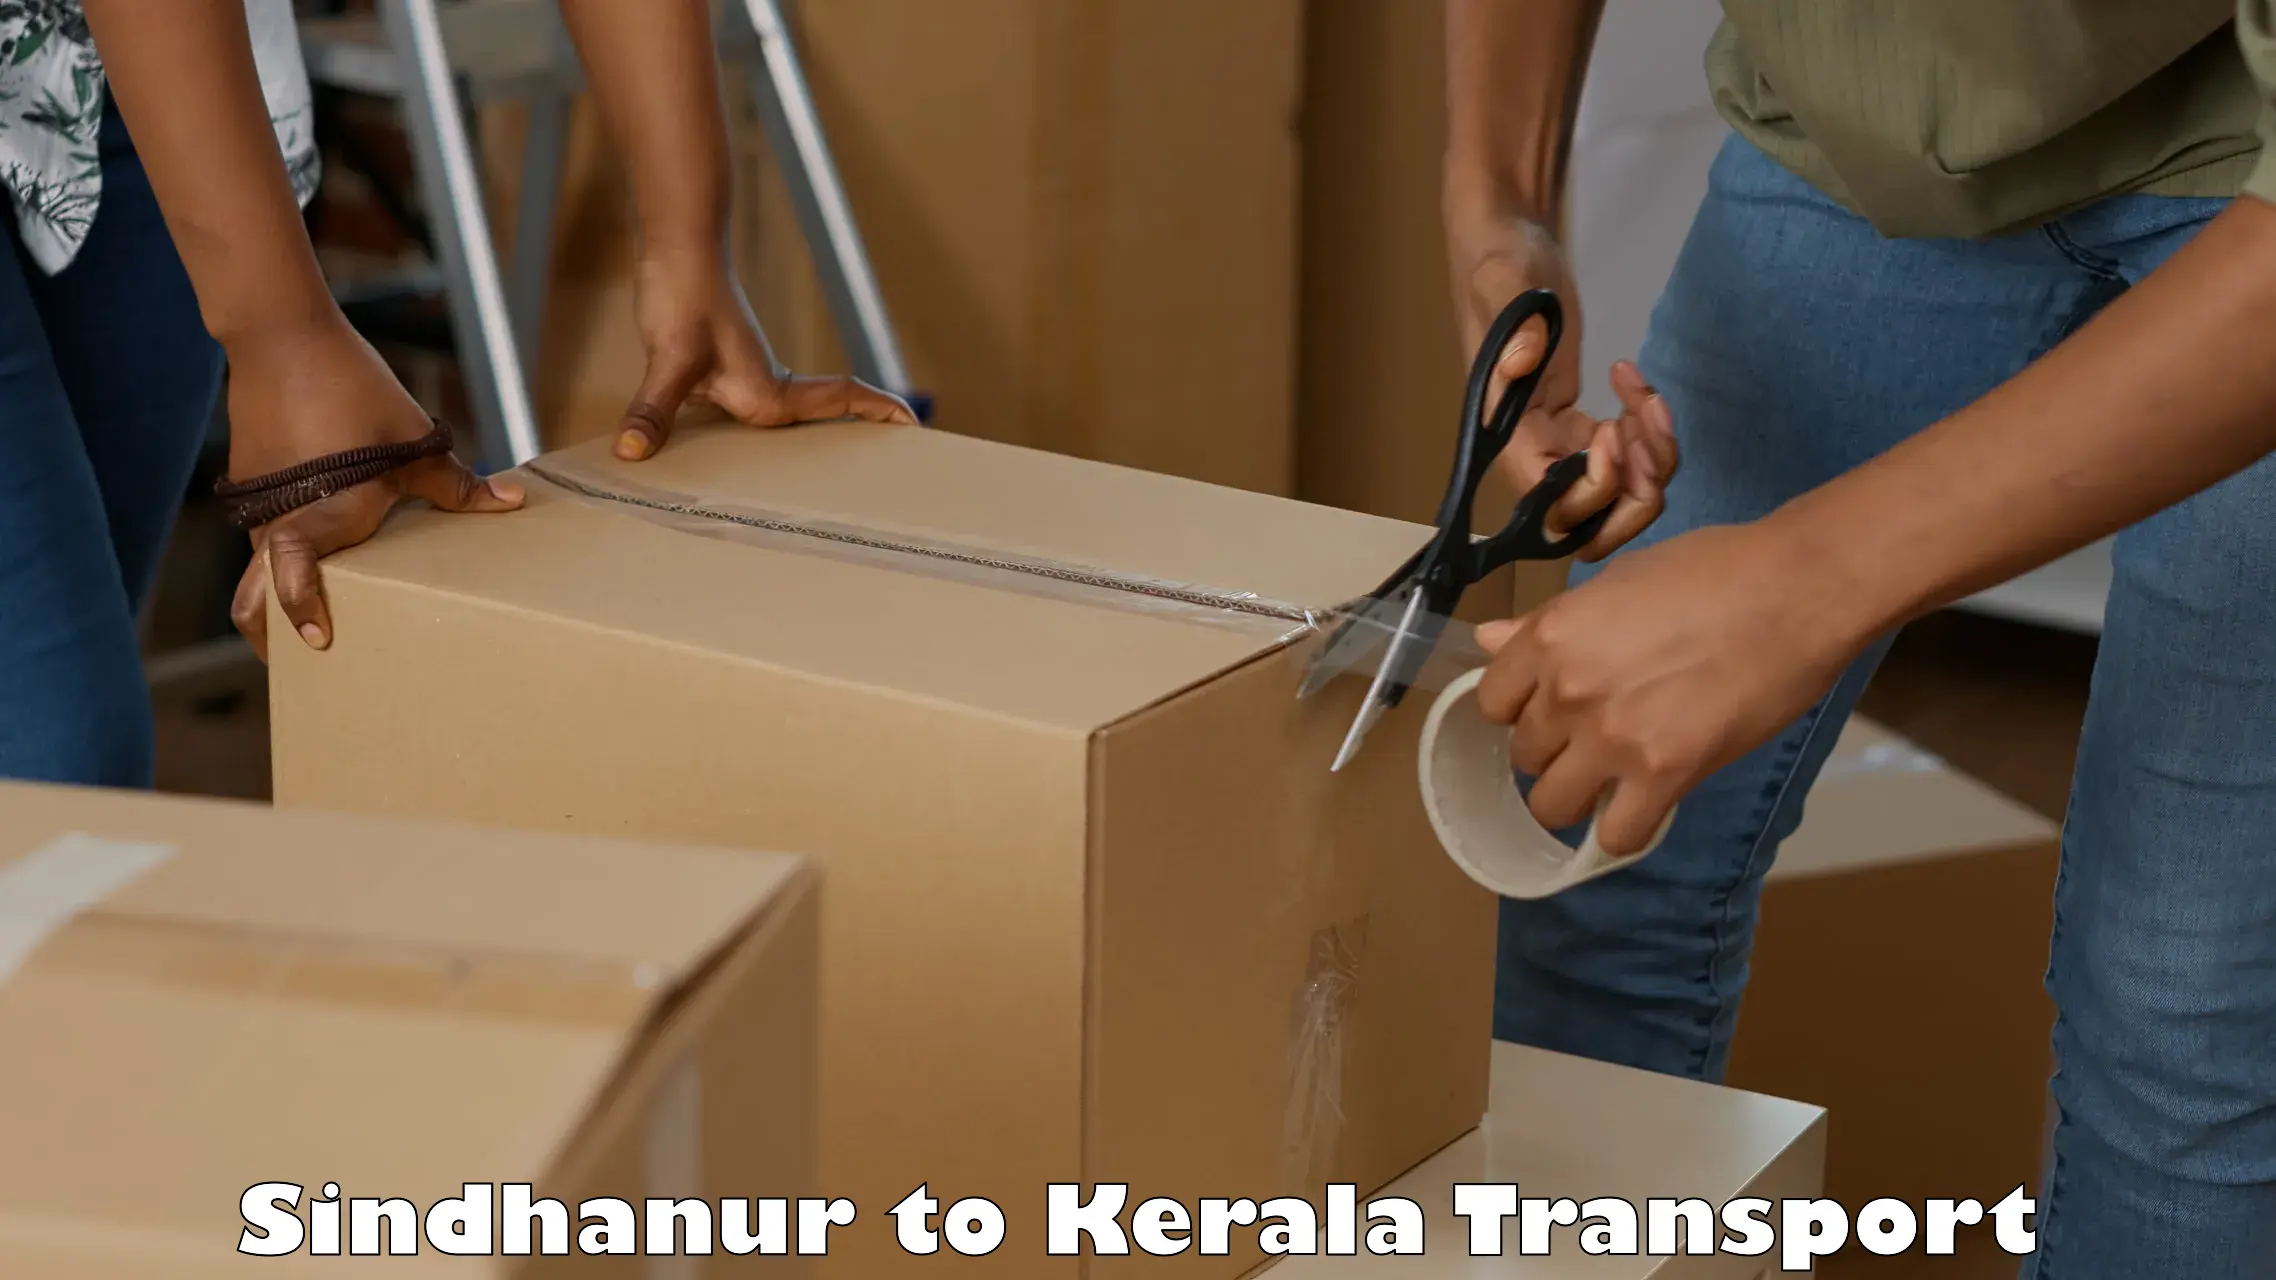 Cargo train transport services Sindhanur to Kochi